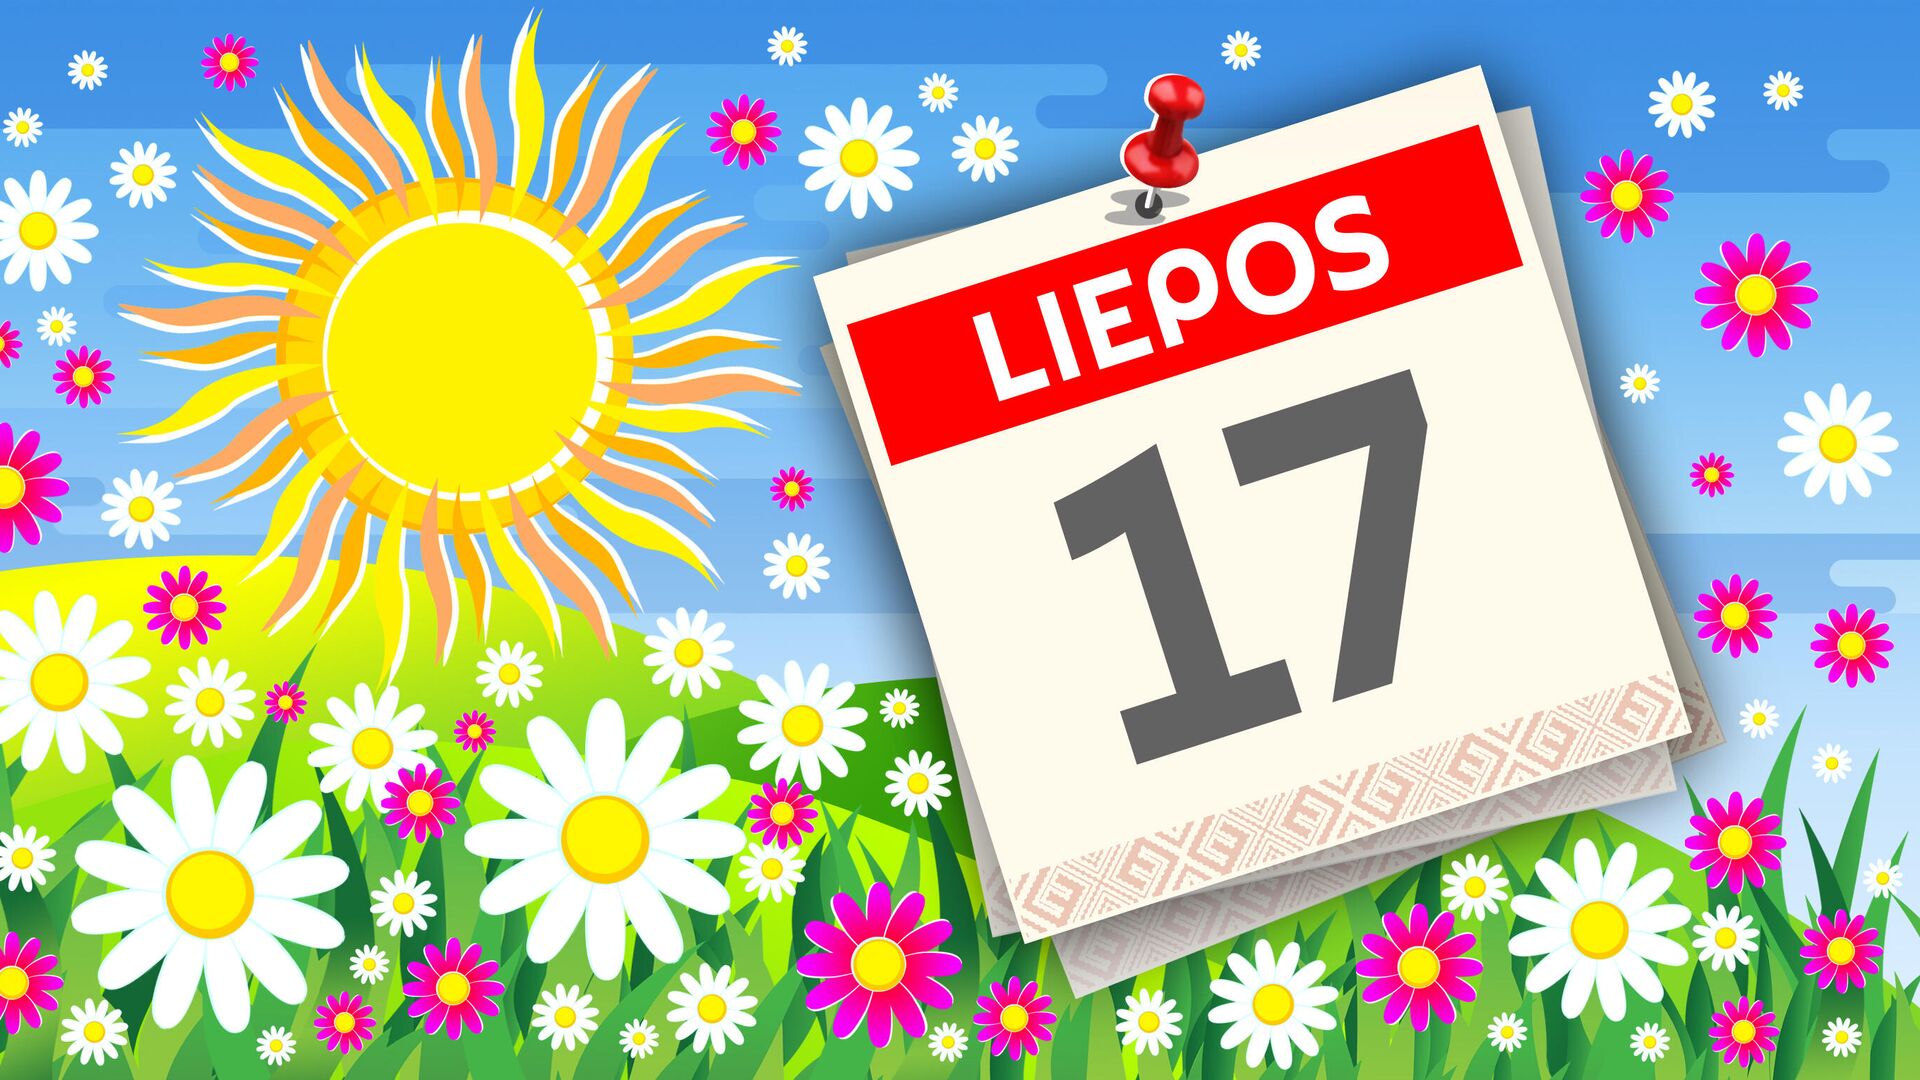 Kalendorius liepos 17 d. - Sputnik Lietuva, 1920, 17.07.2021